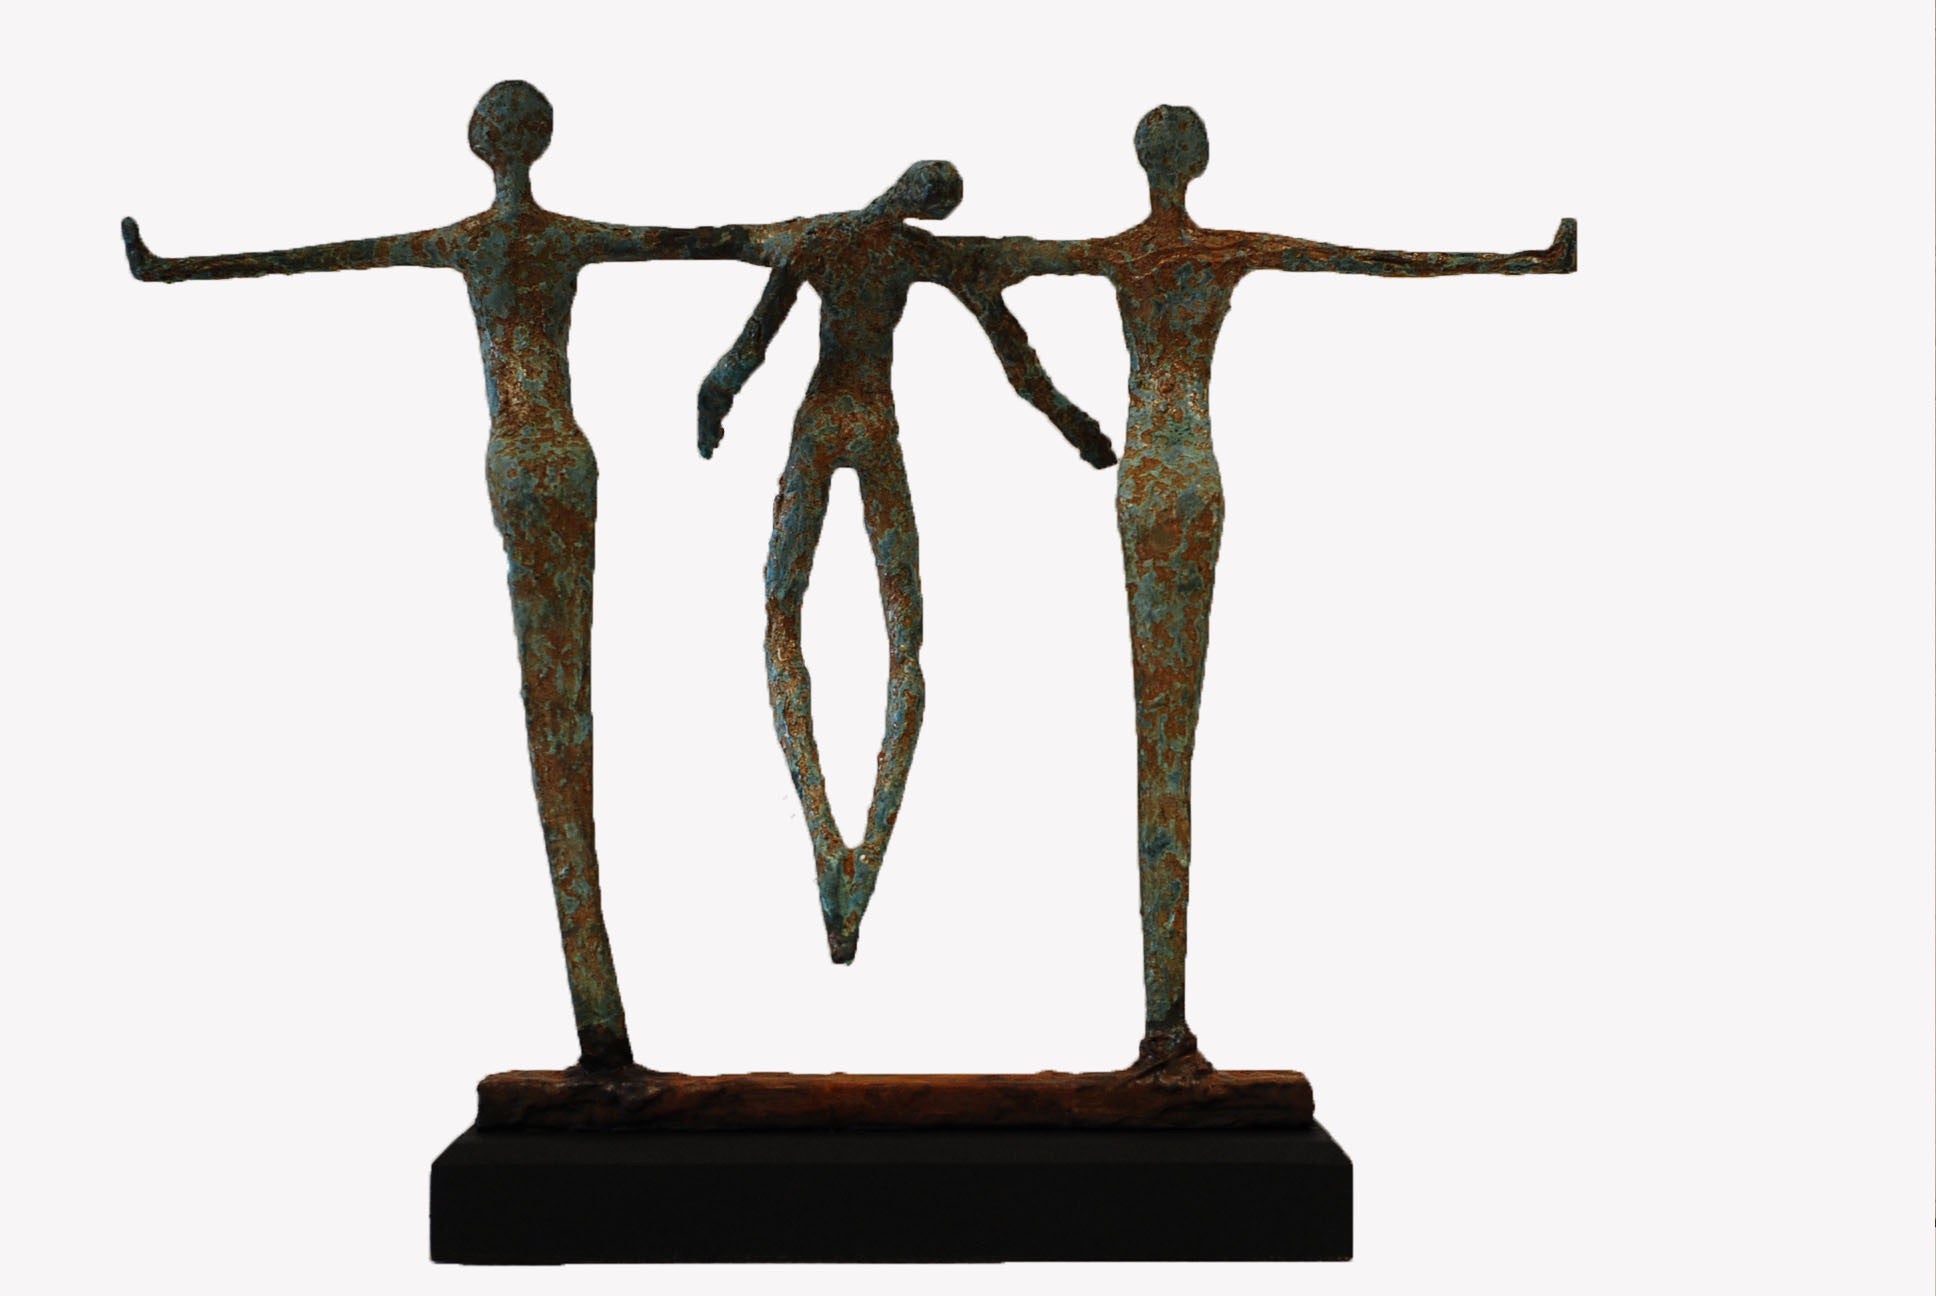 Judgement sculpture - Emmanuel Okoro